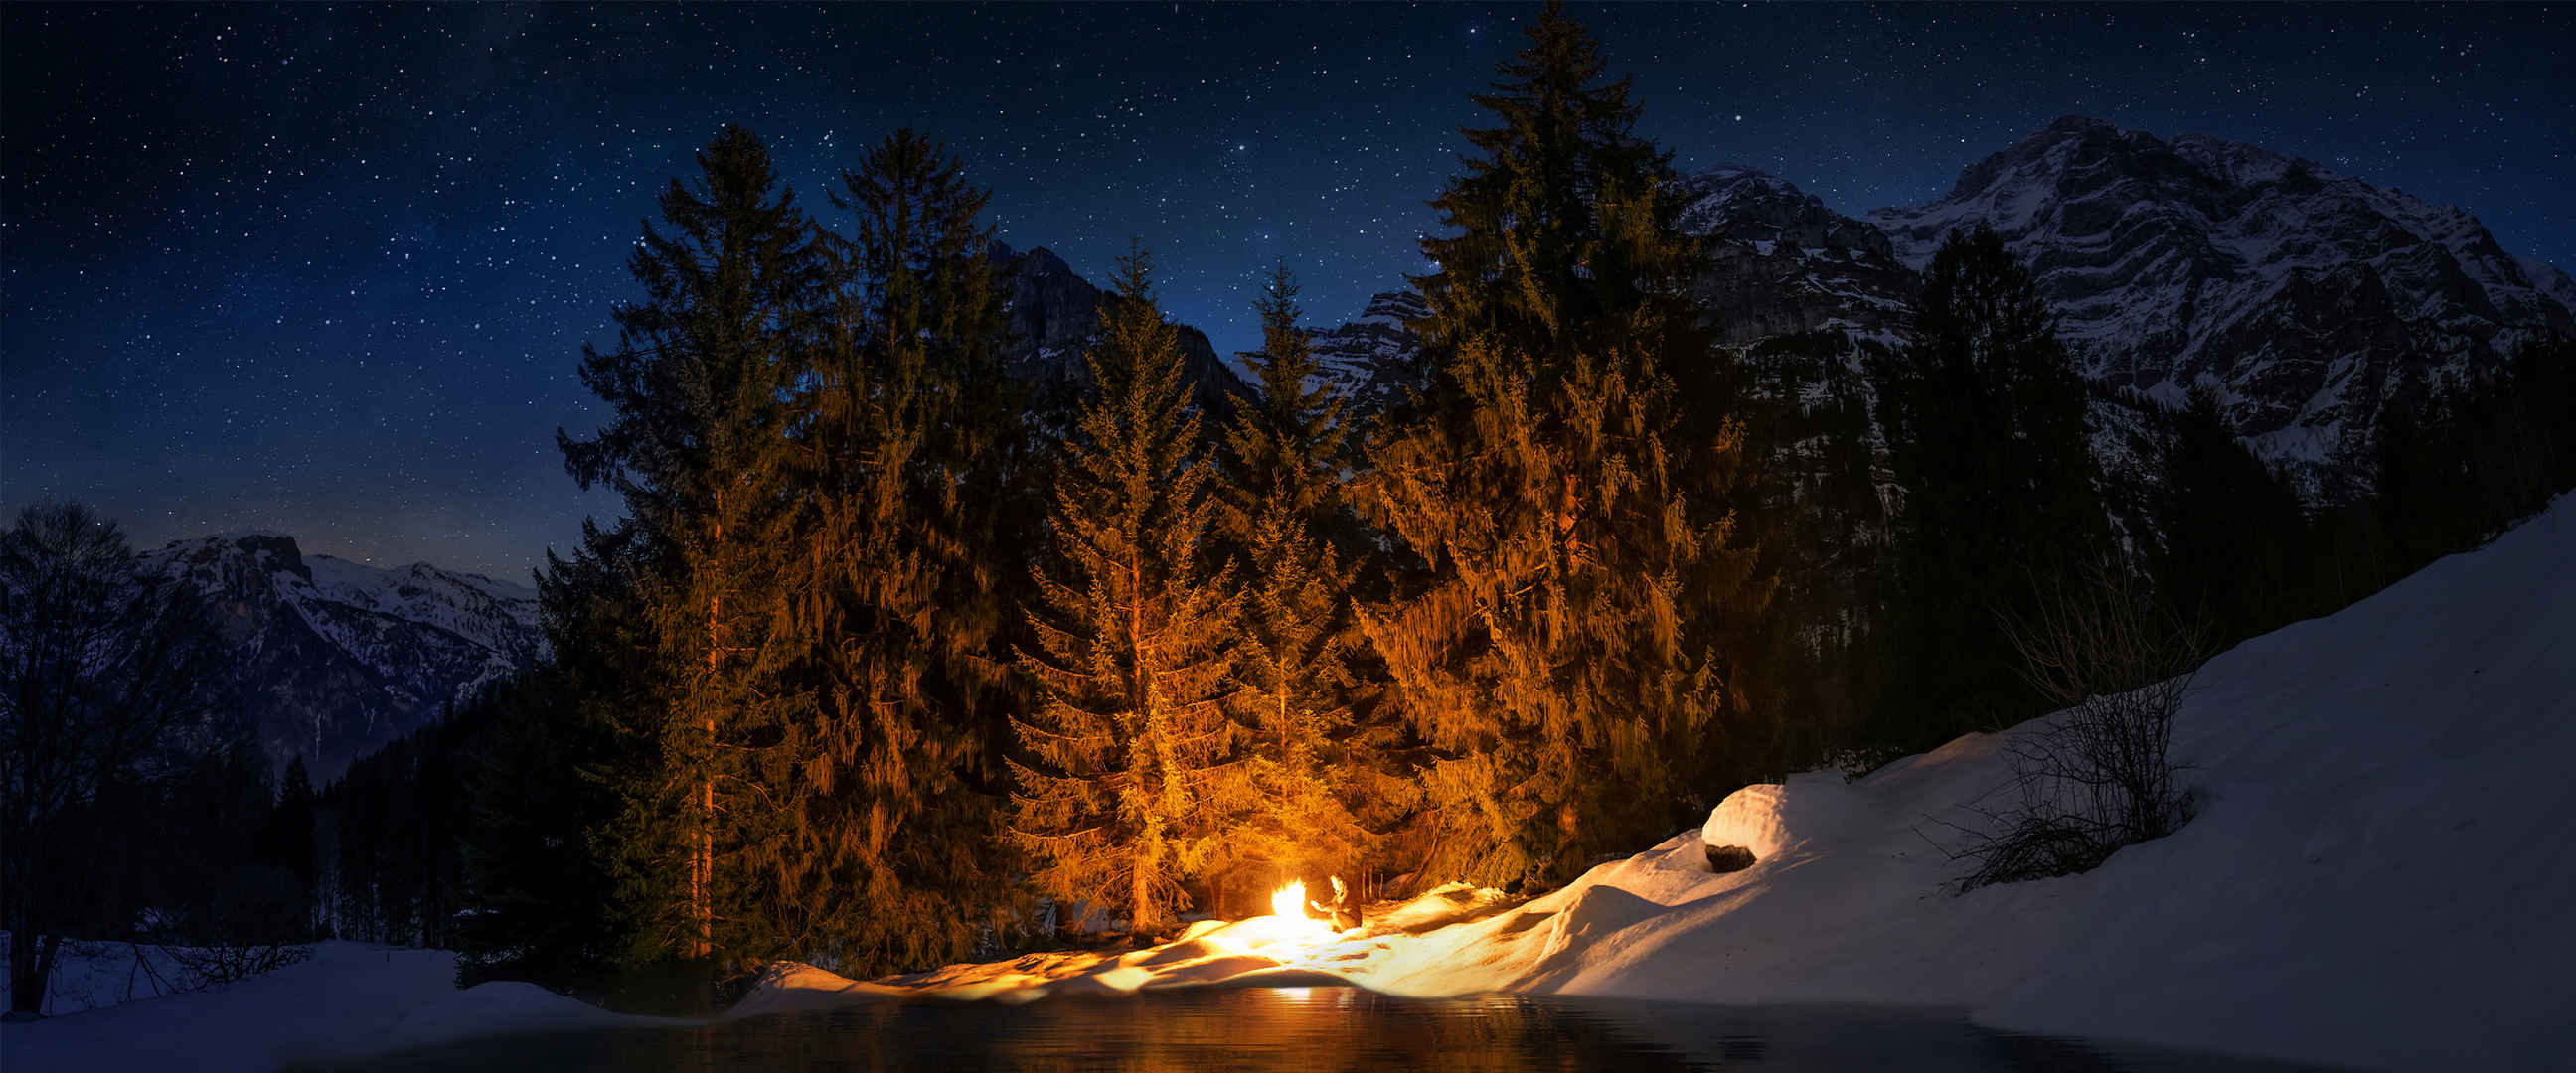 夜里森林里一个人生火取暖图片-